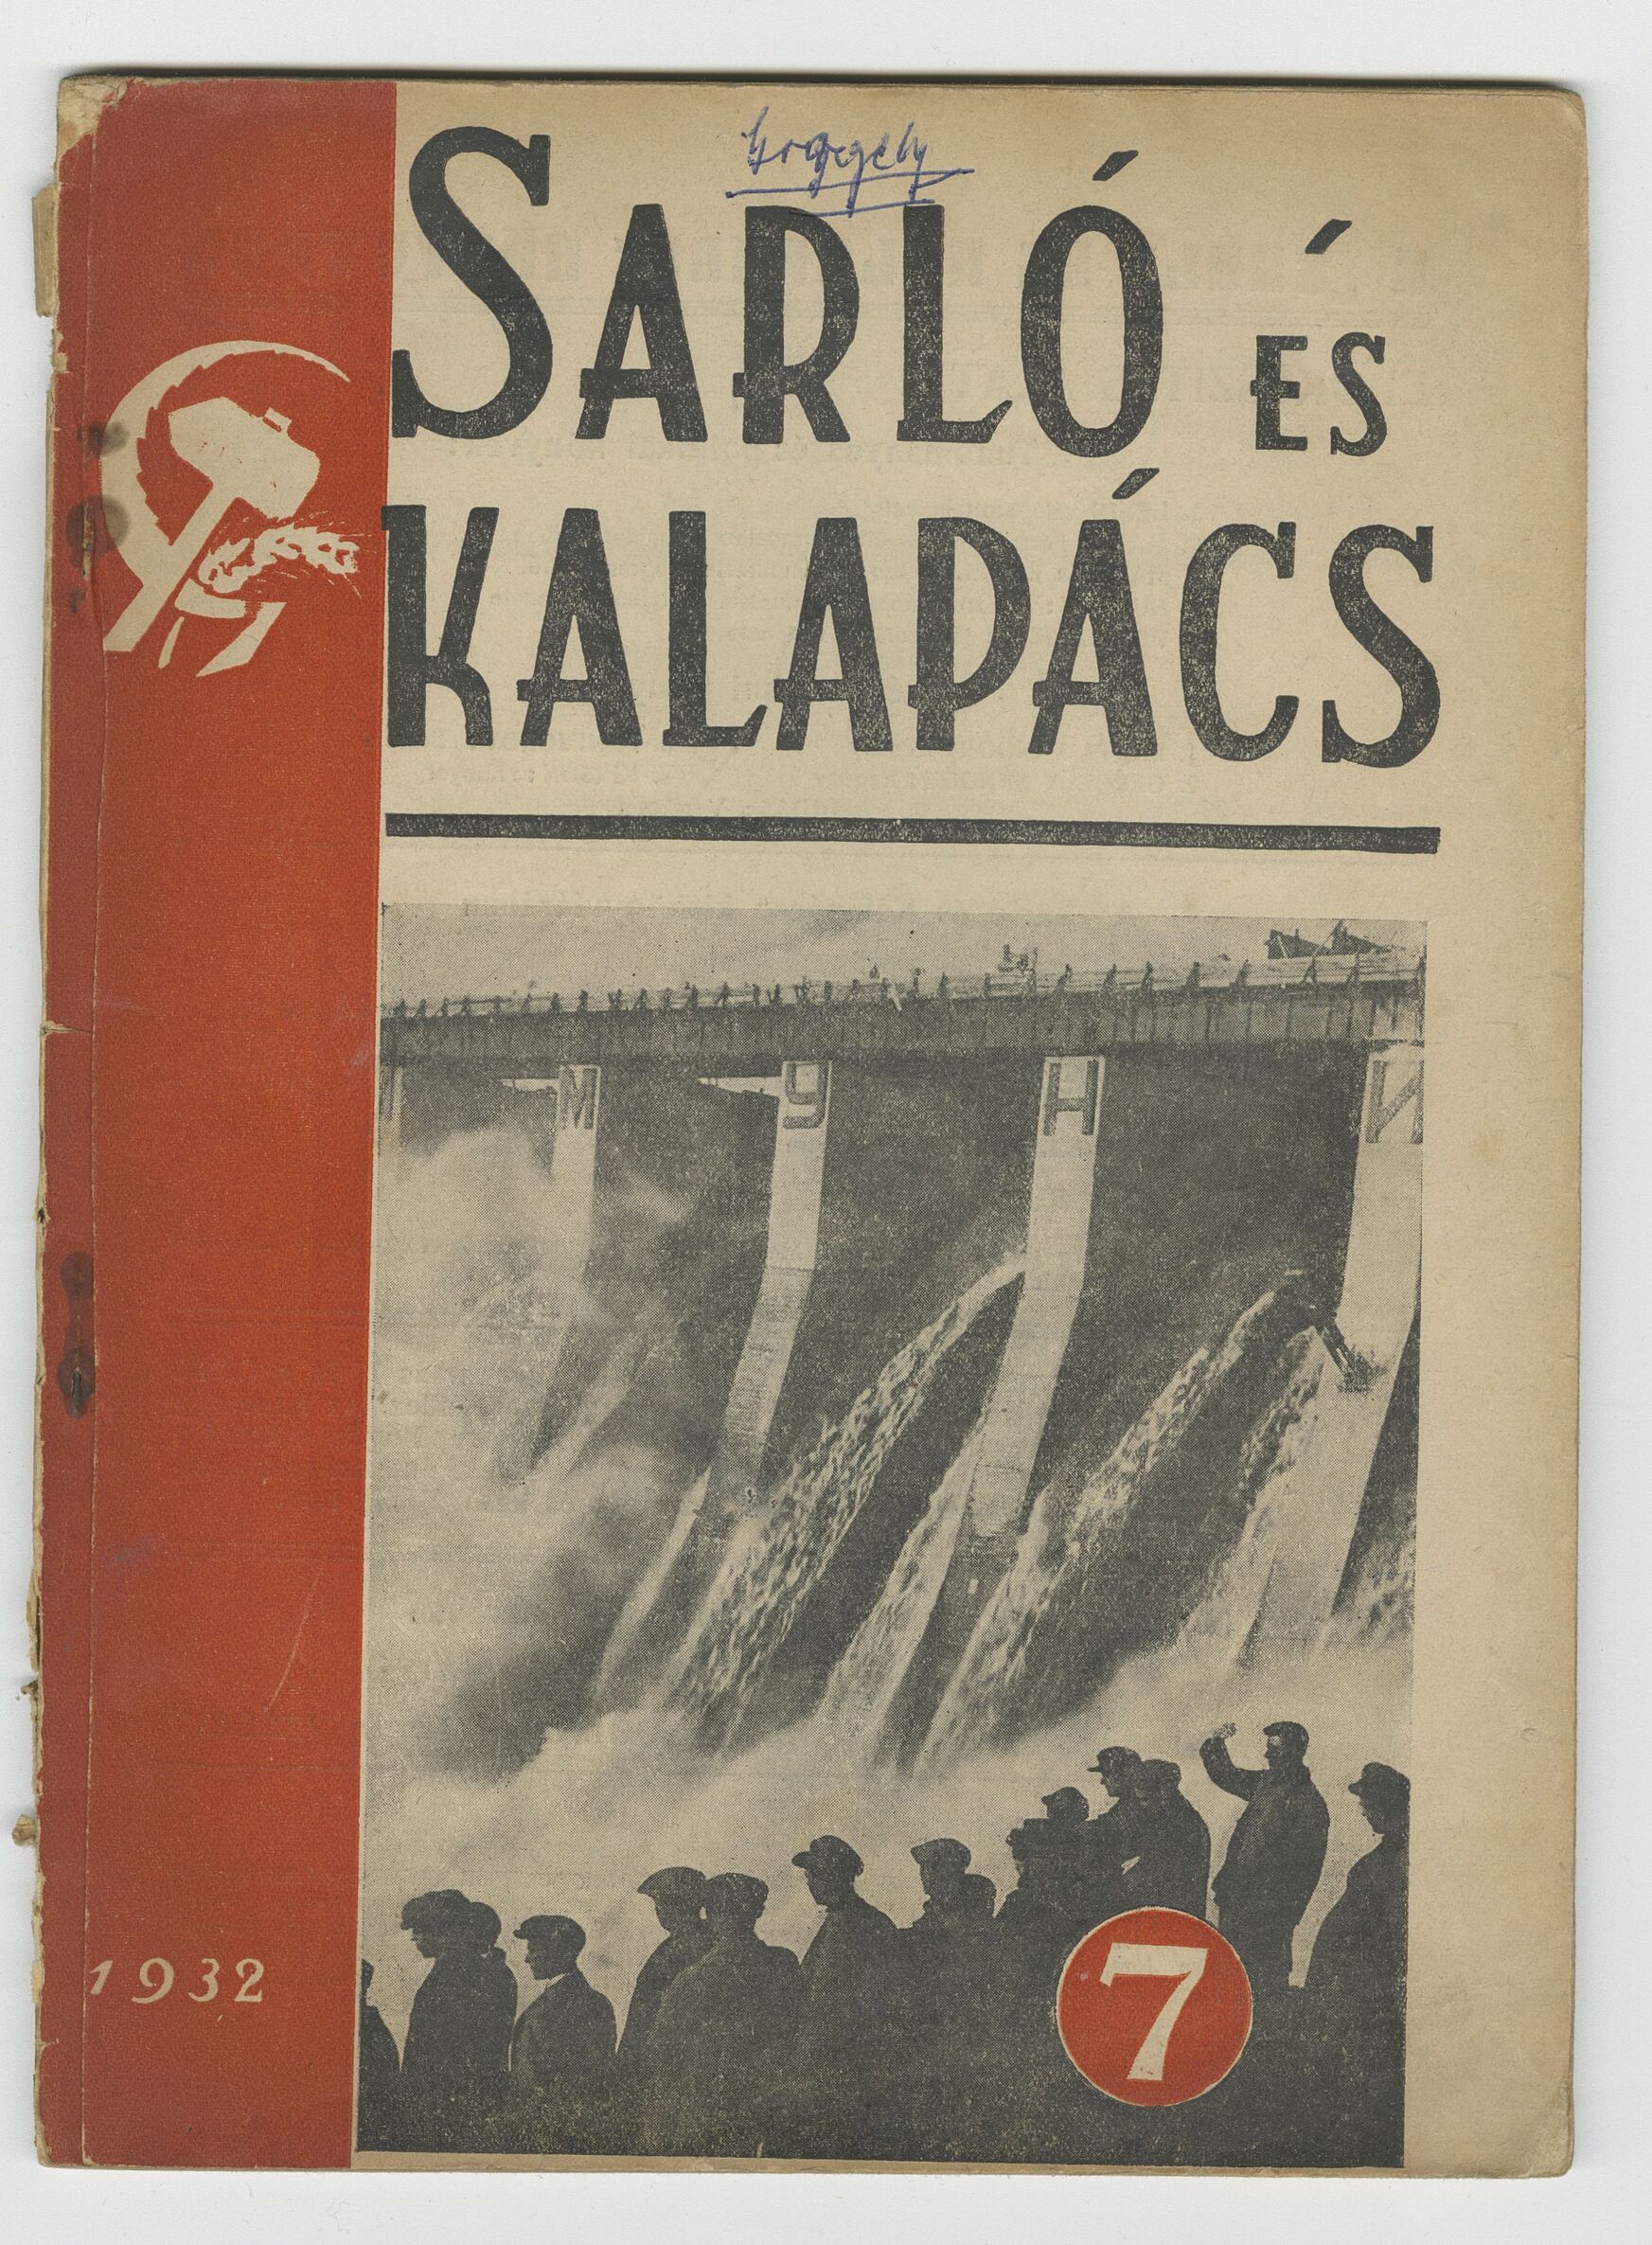 17.	Sarló és Kalapács, 4. évf. 7. szám, 1932. Július, Petőfi Irodalmi Múzeum